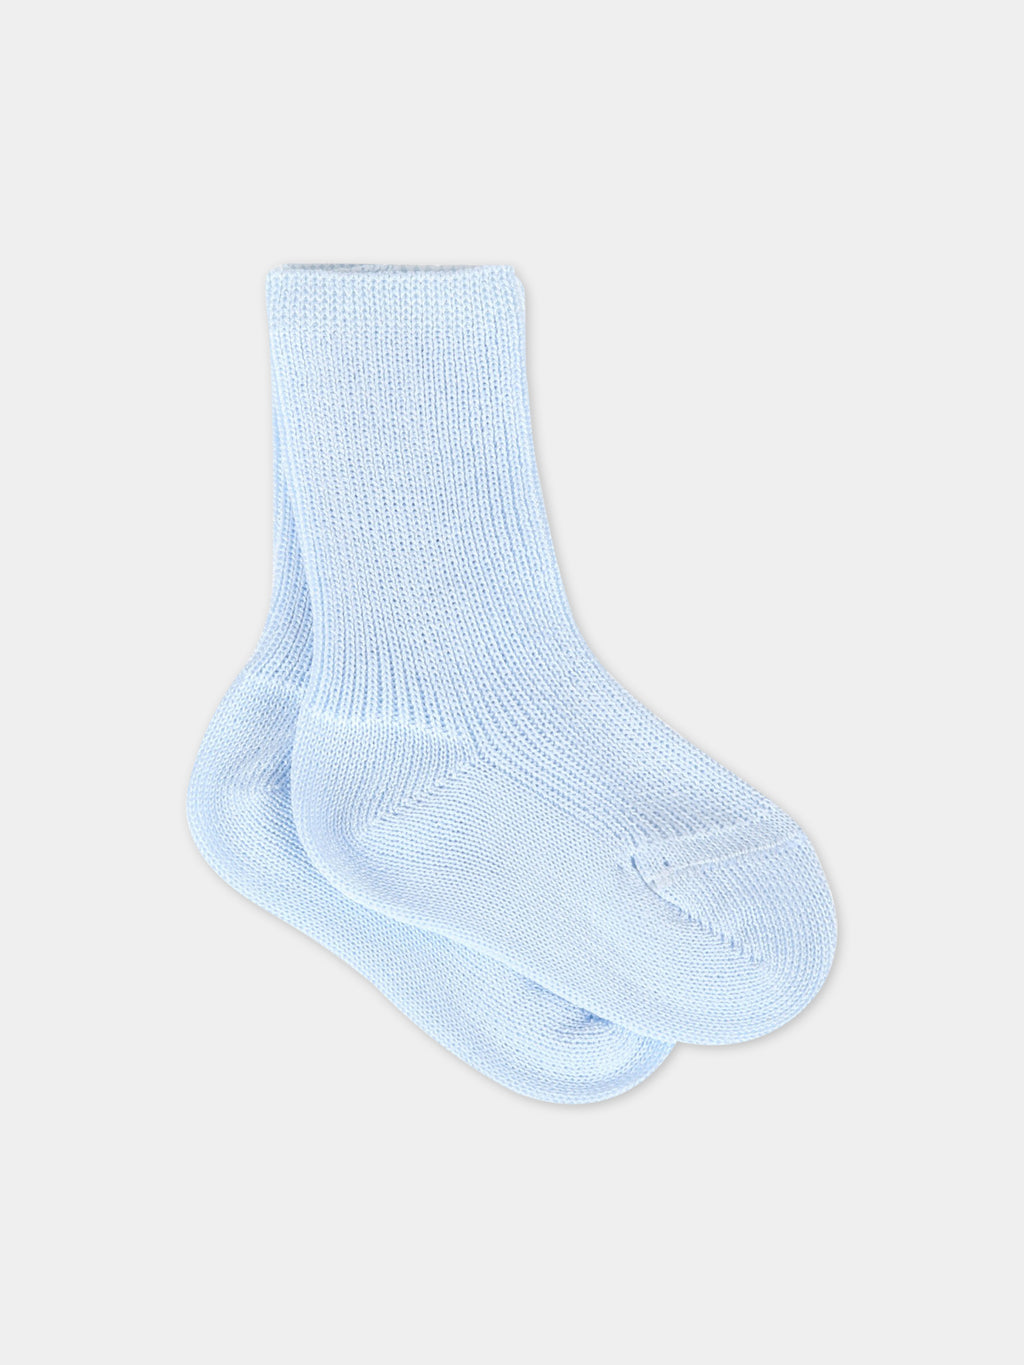 Light blue socks for babyboy